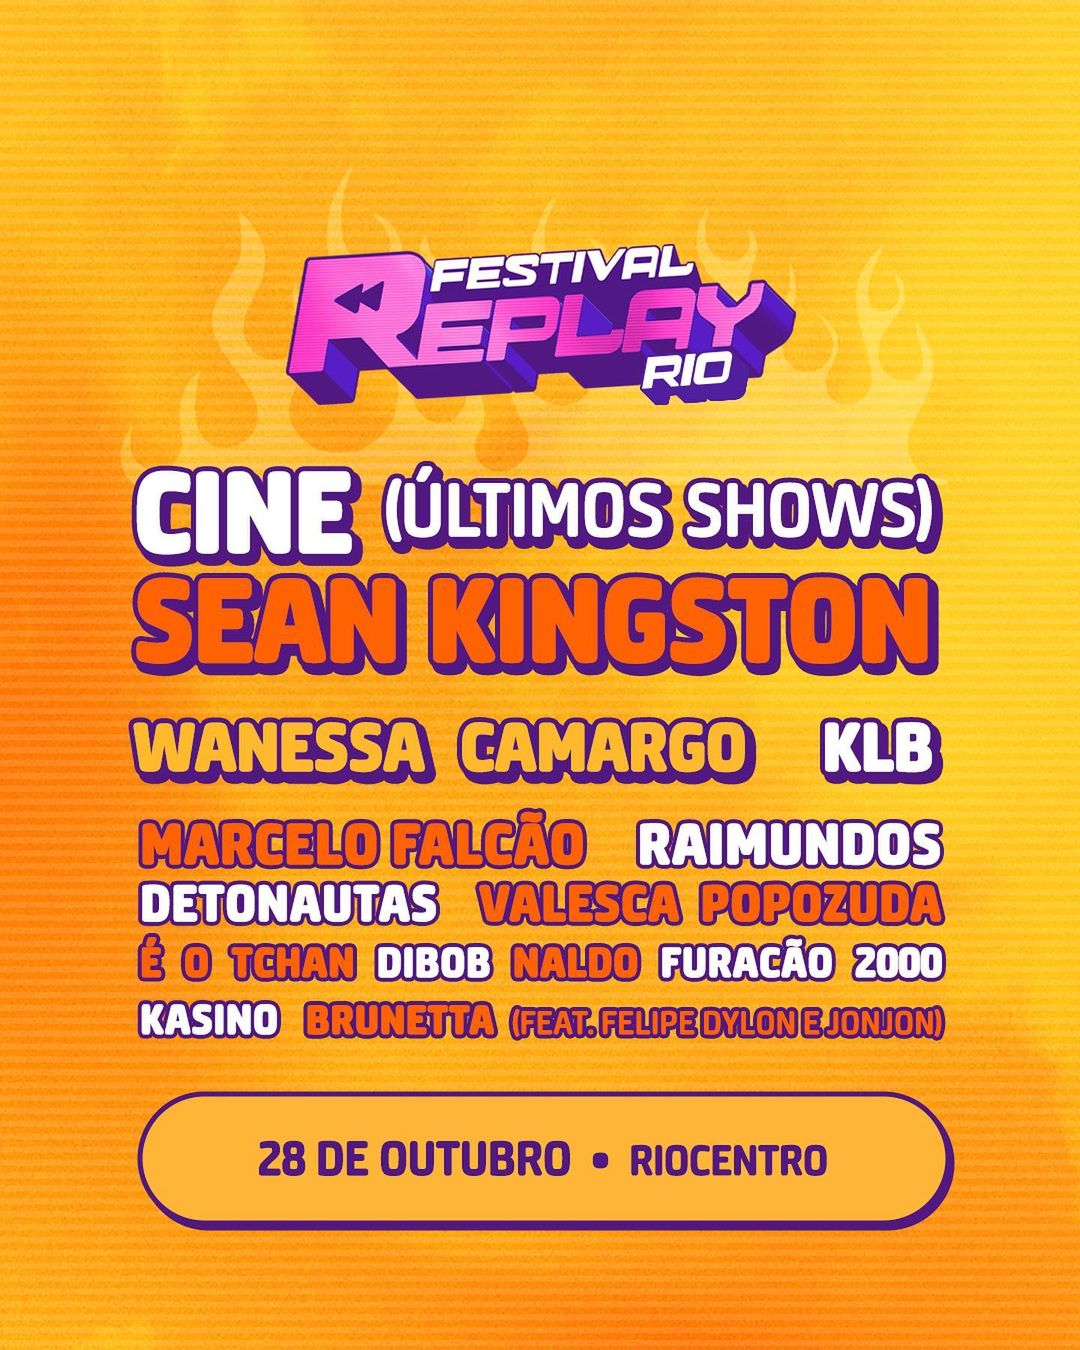 O Replay Festival reúne grandes sucessos da música dos anos 2000. Confira a programação com a banda Cine, Sean Kingston e muito mais.